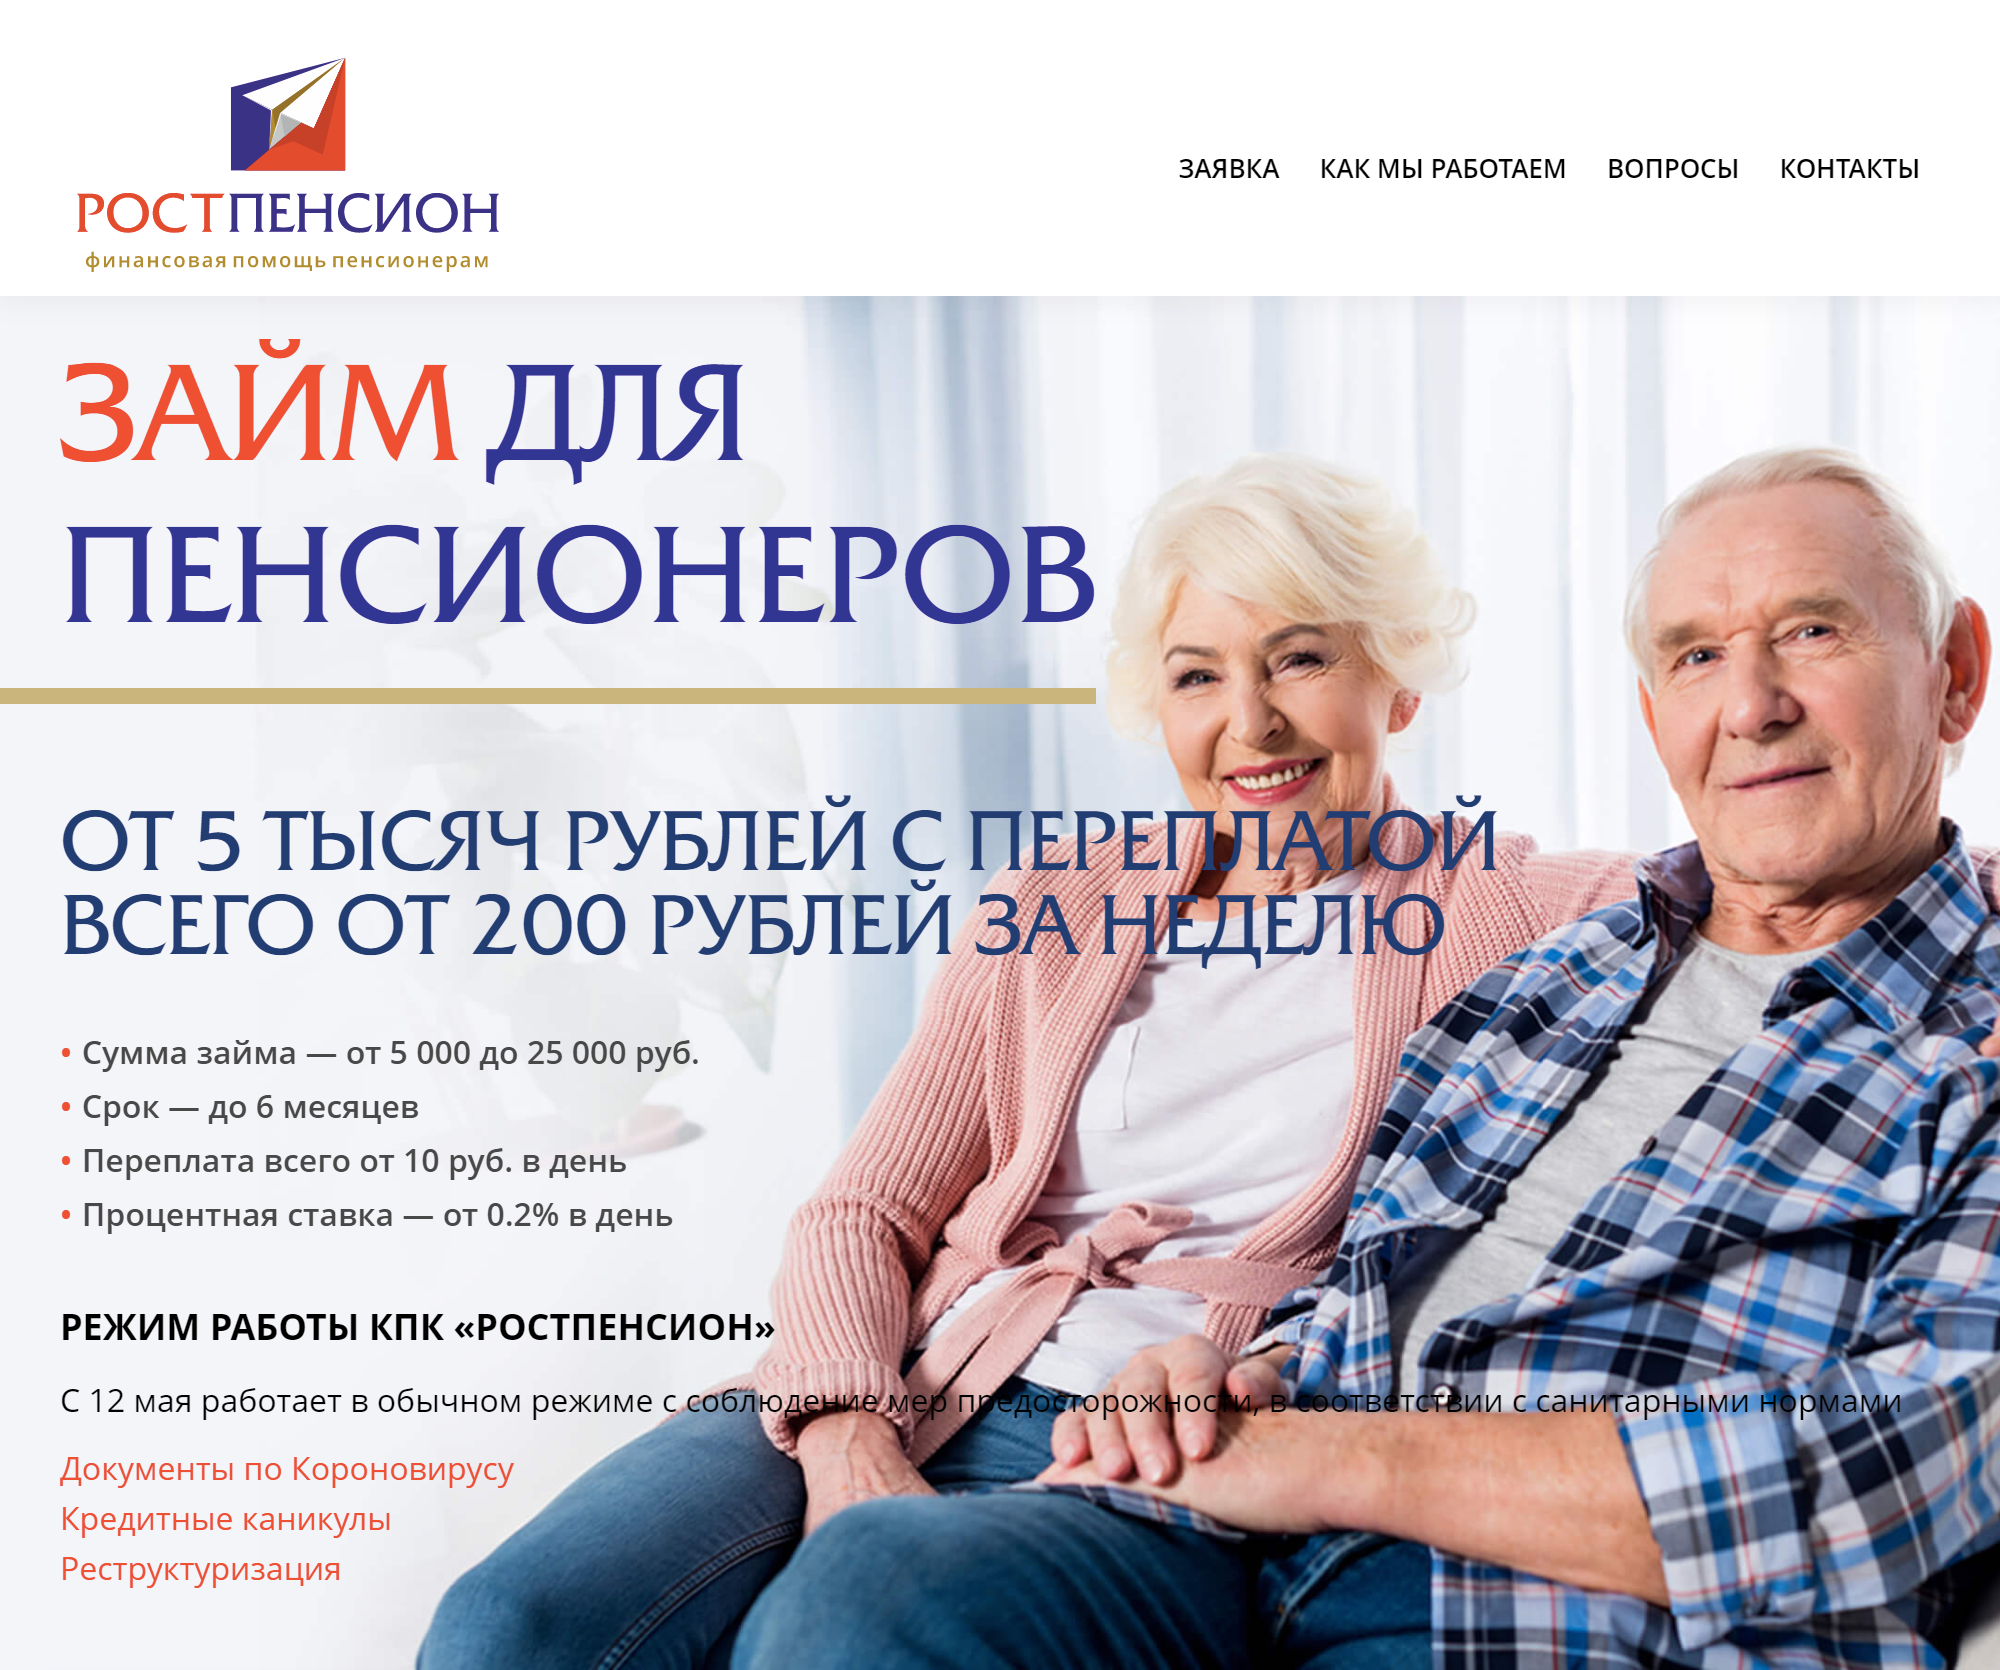 Займы в Рубцовске для пенсионеров круглосуточно